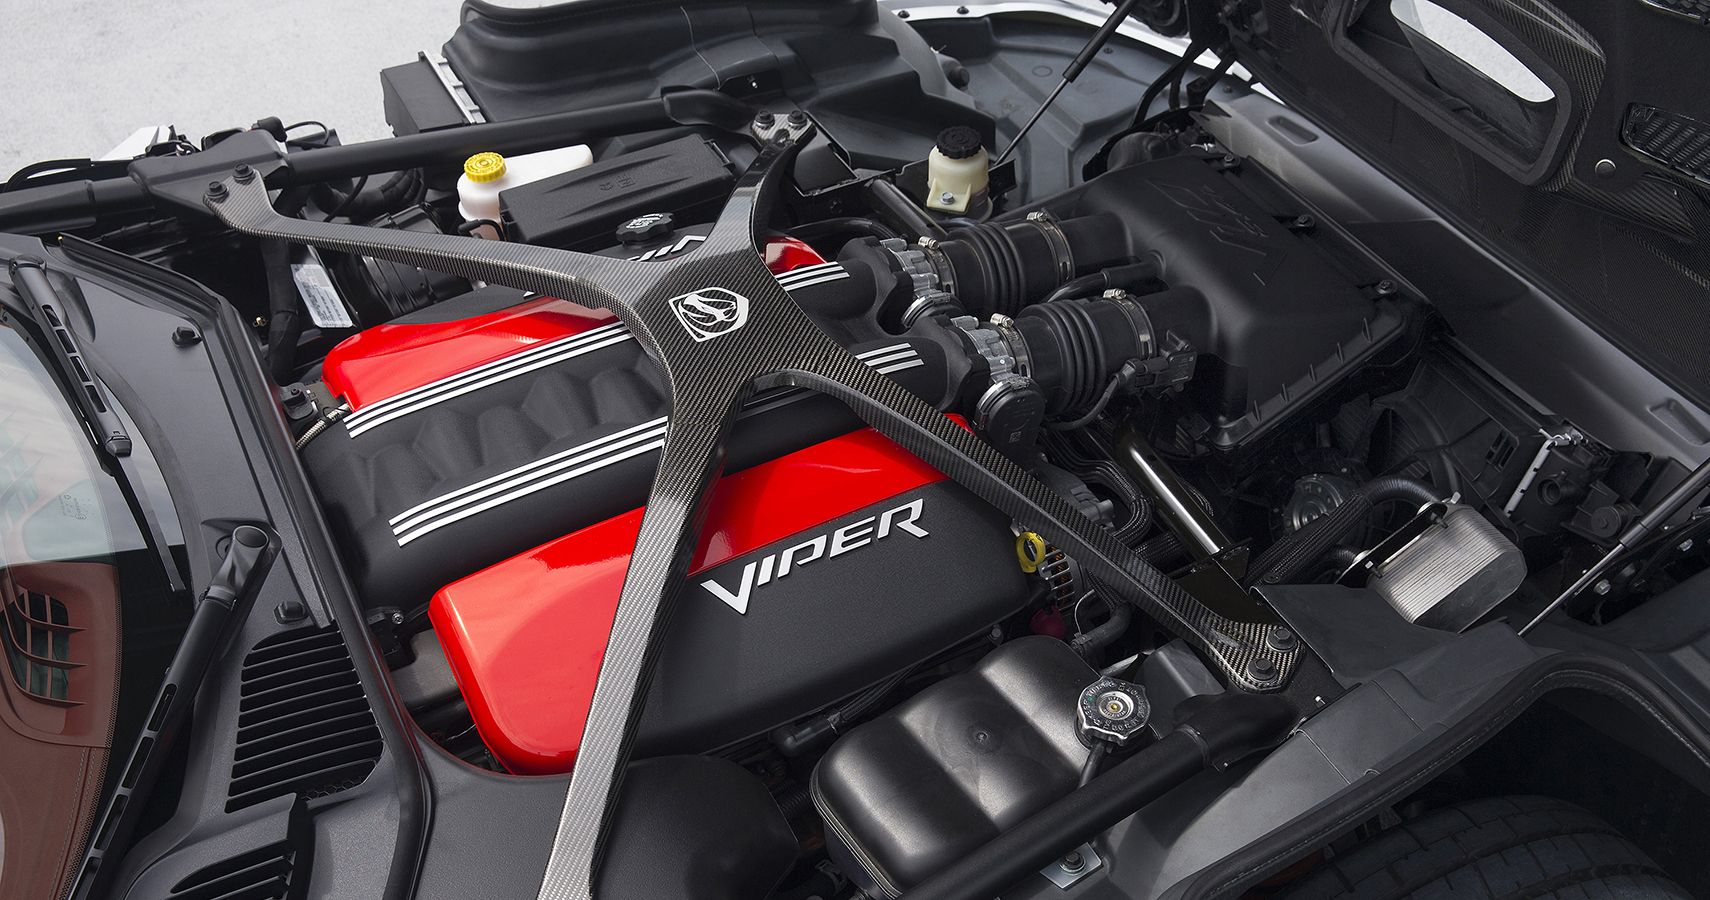 Viper 8.4-liter engine